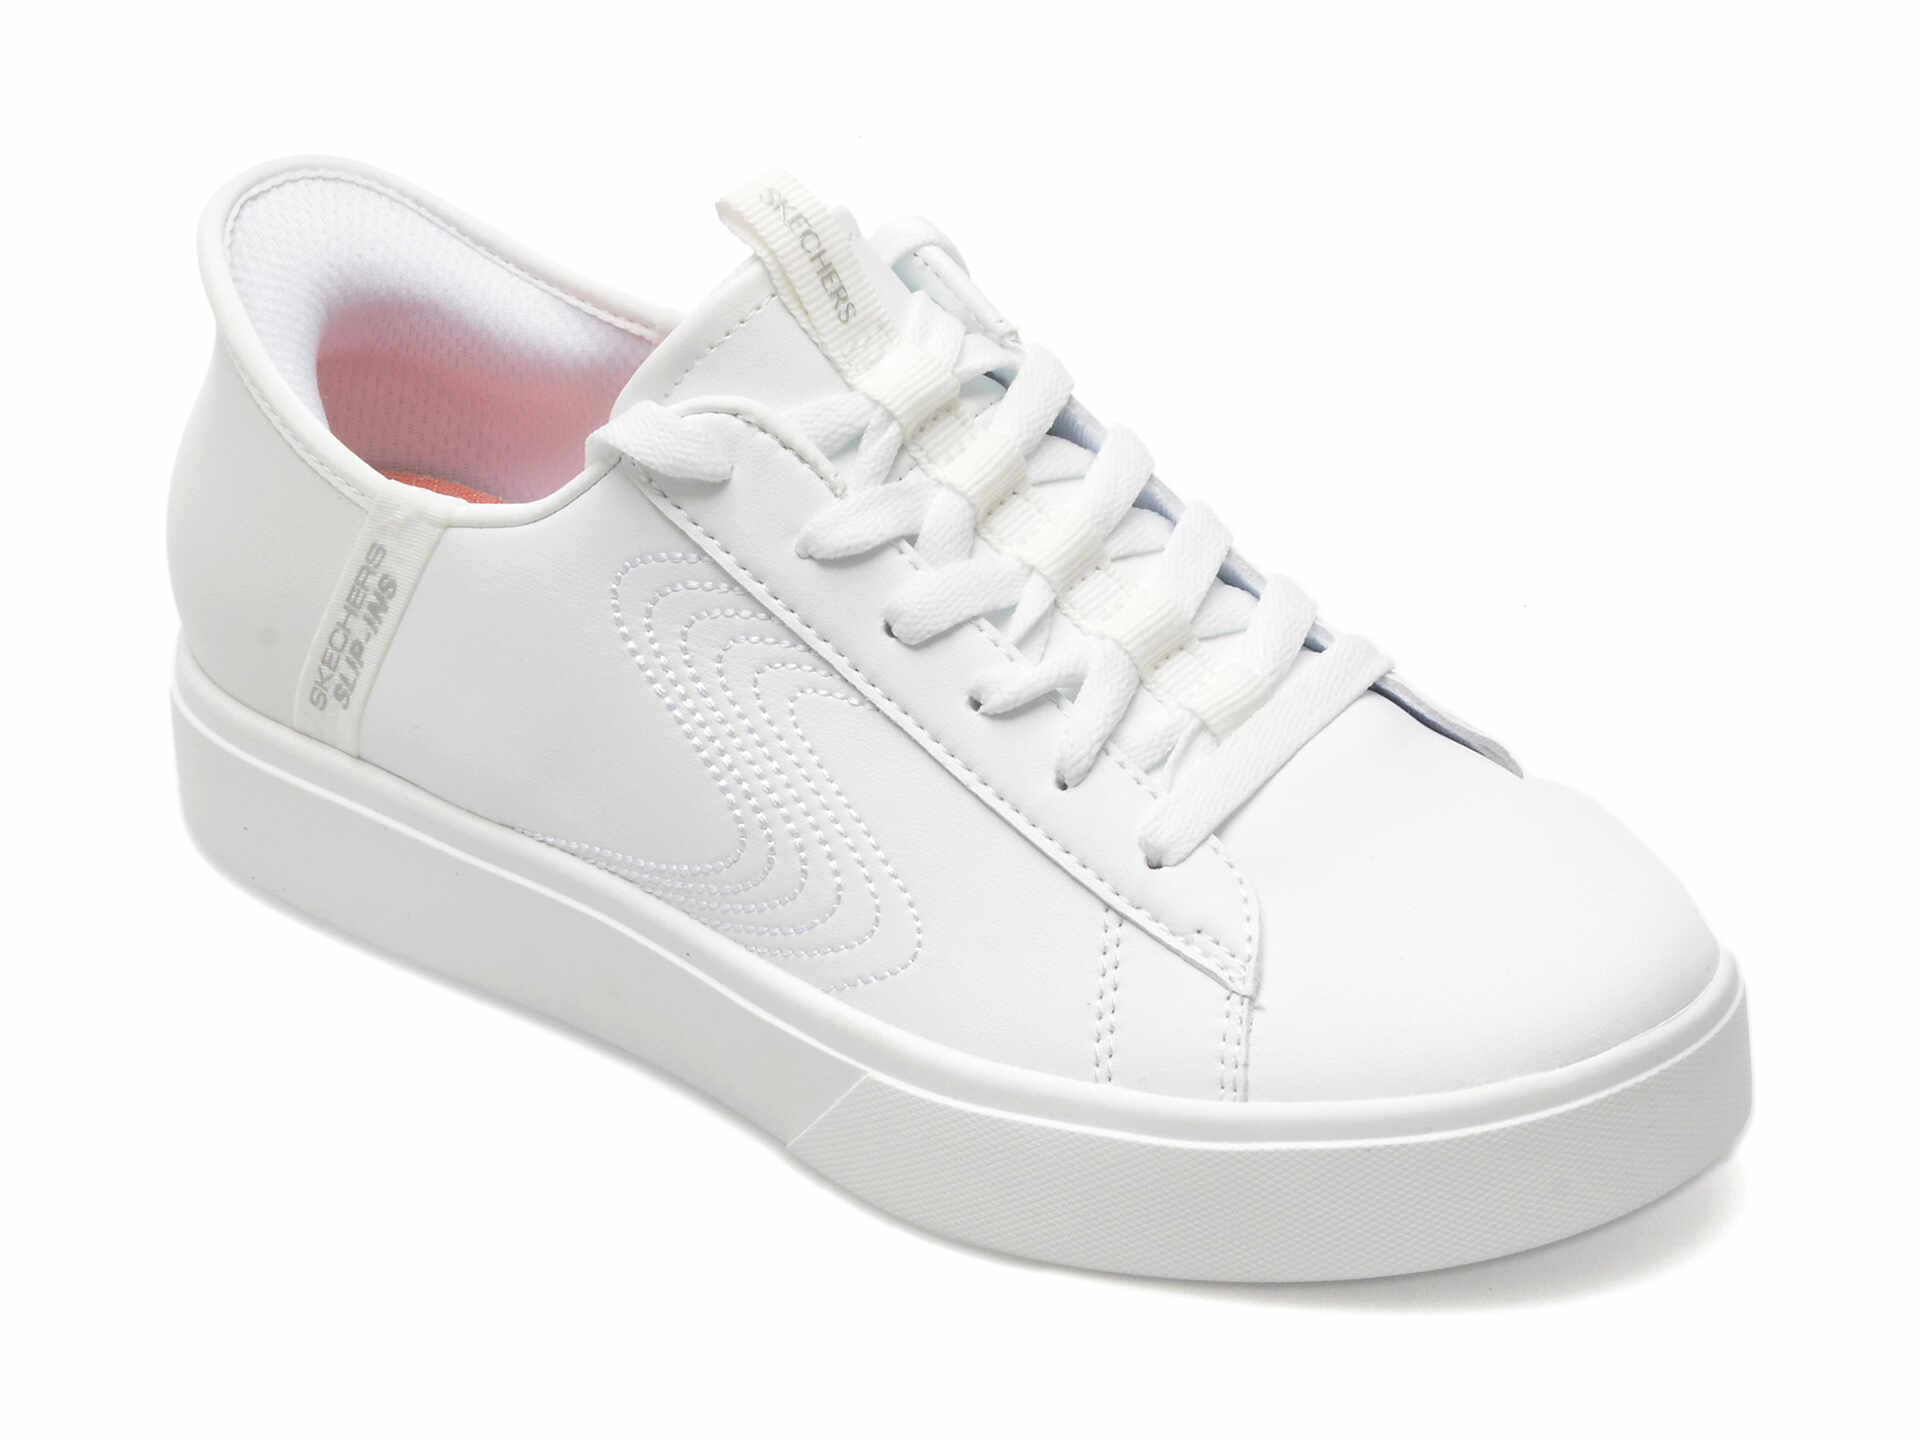 Pantofi SKECHERS albi, EDEN LX, din piele ecologica